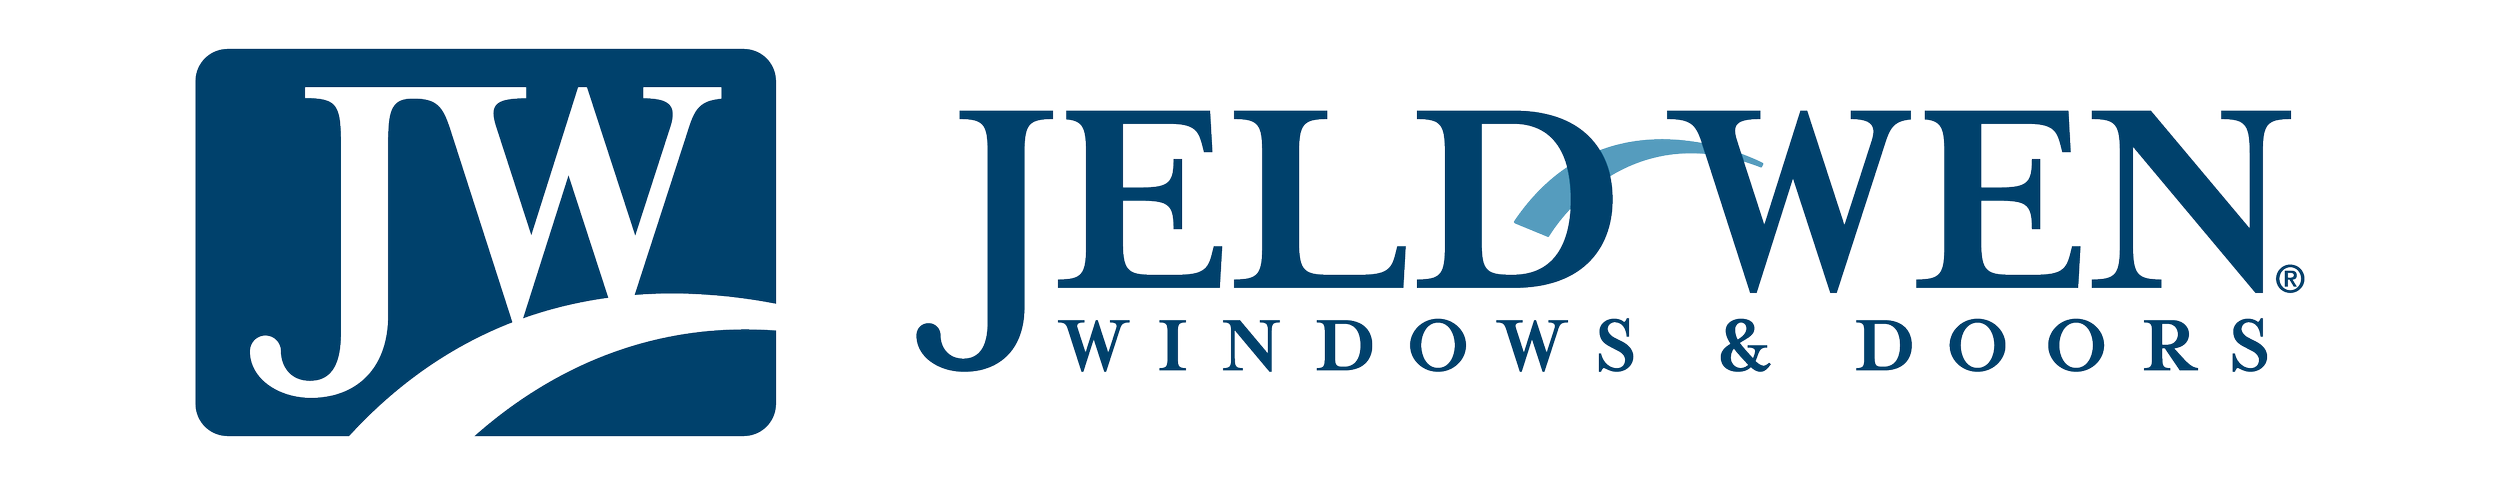 JELD-WEN_Logo RGB-01.png